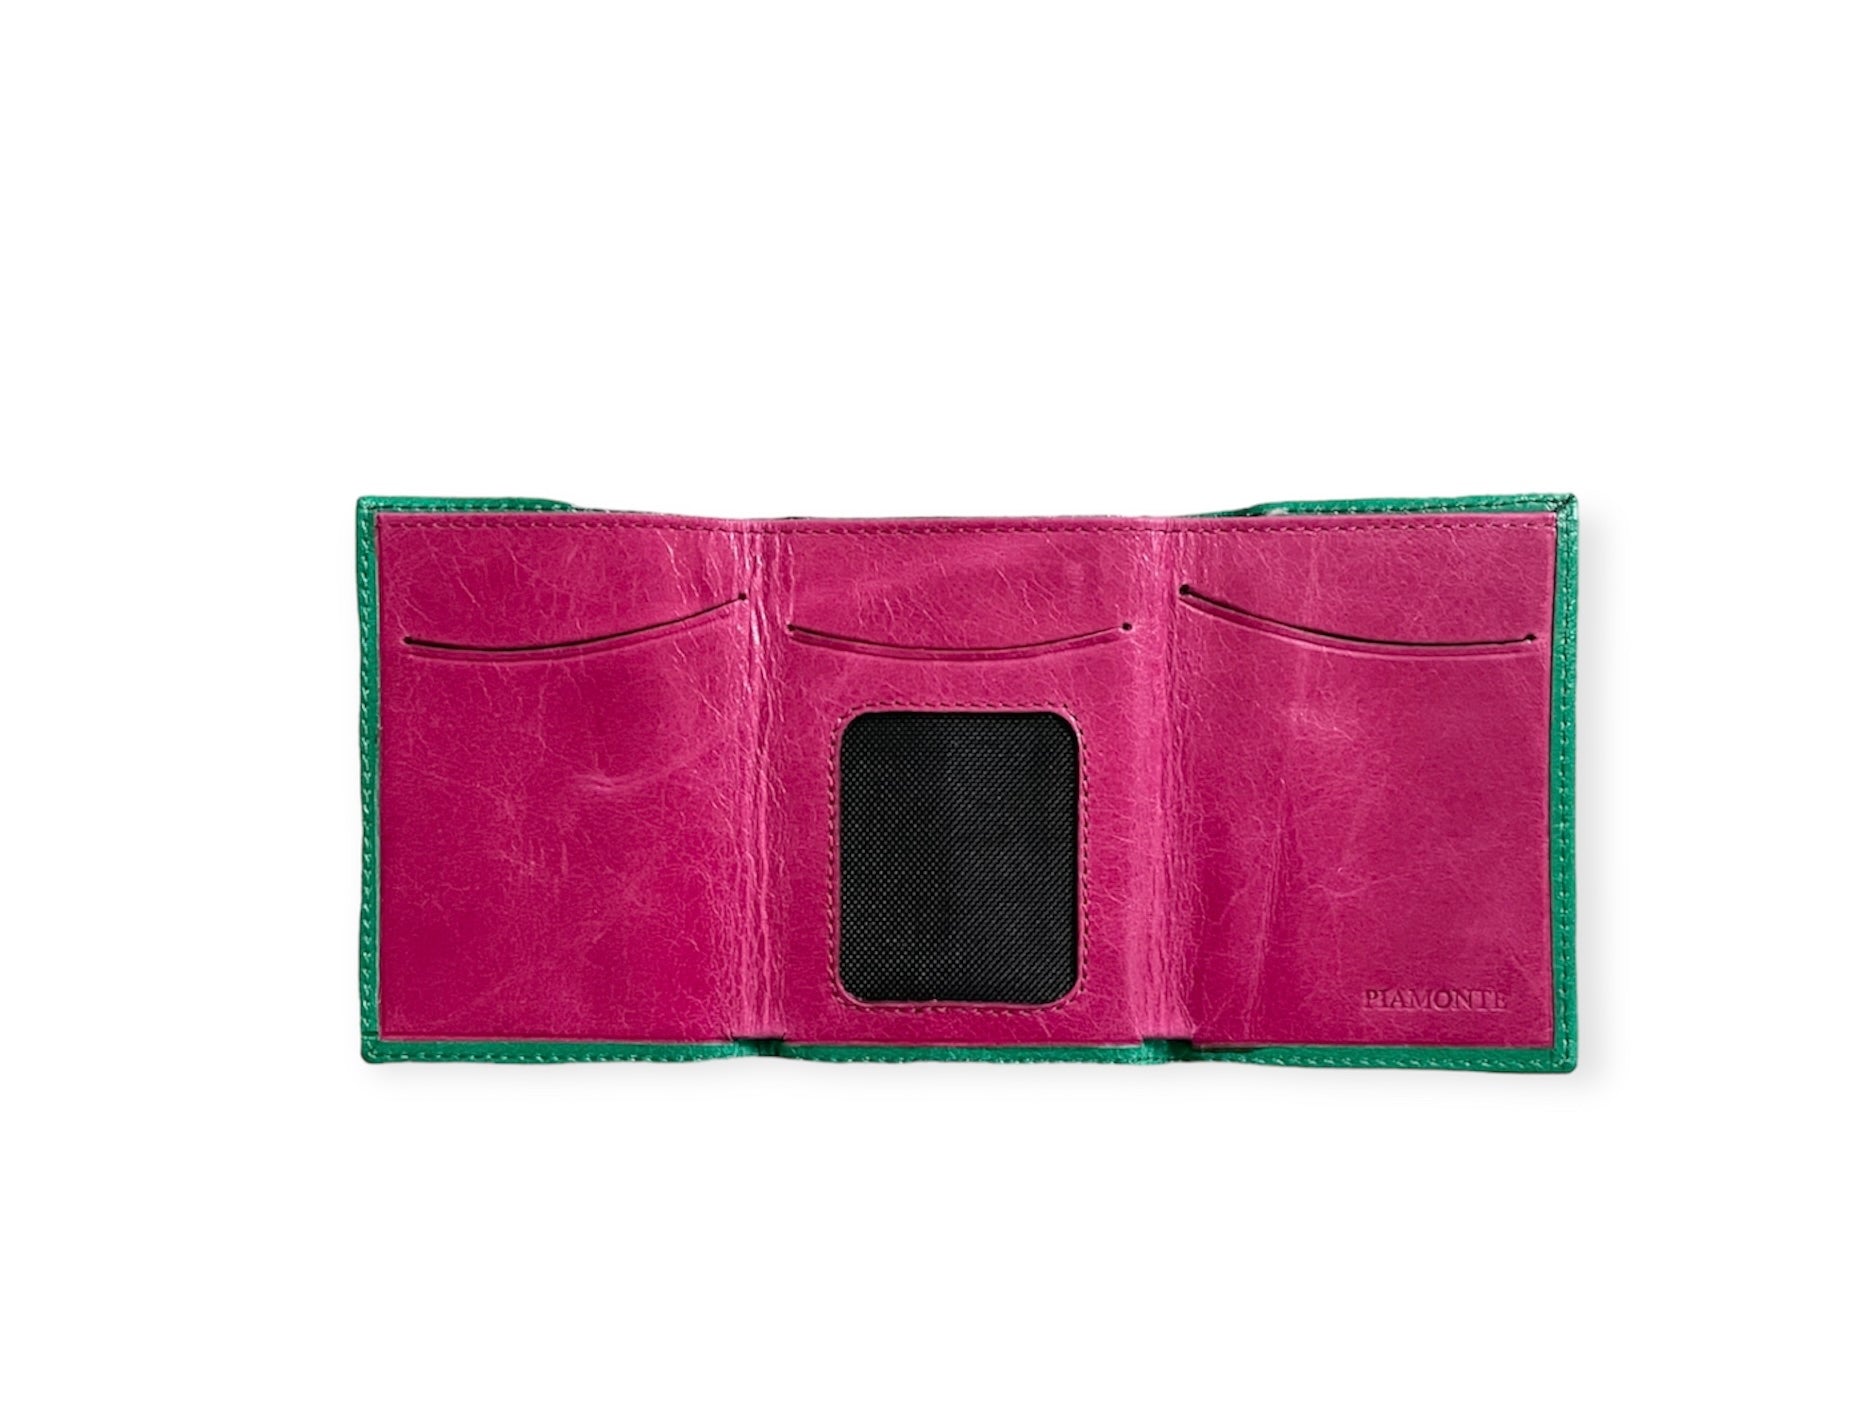 Petit portefeuille vert émeraude, Icon Piedmont 950